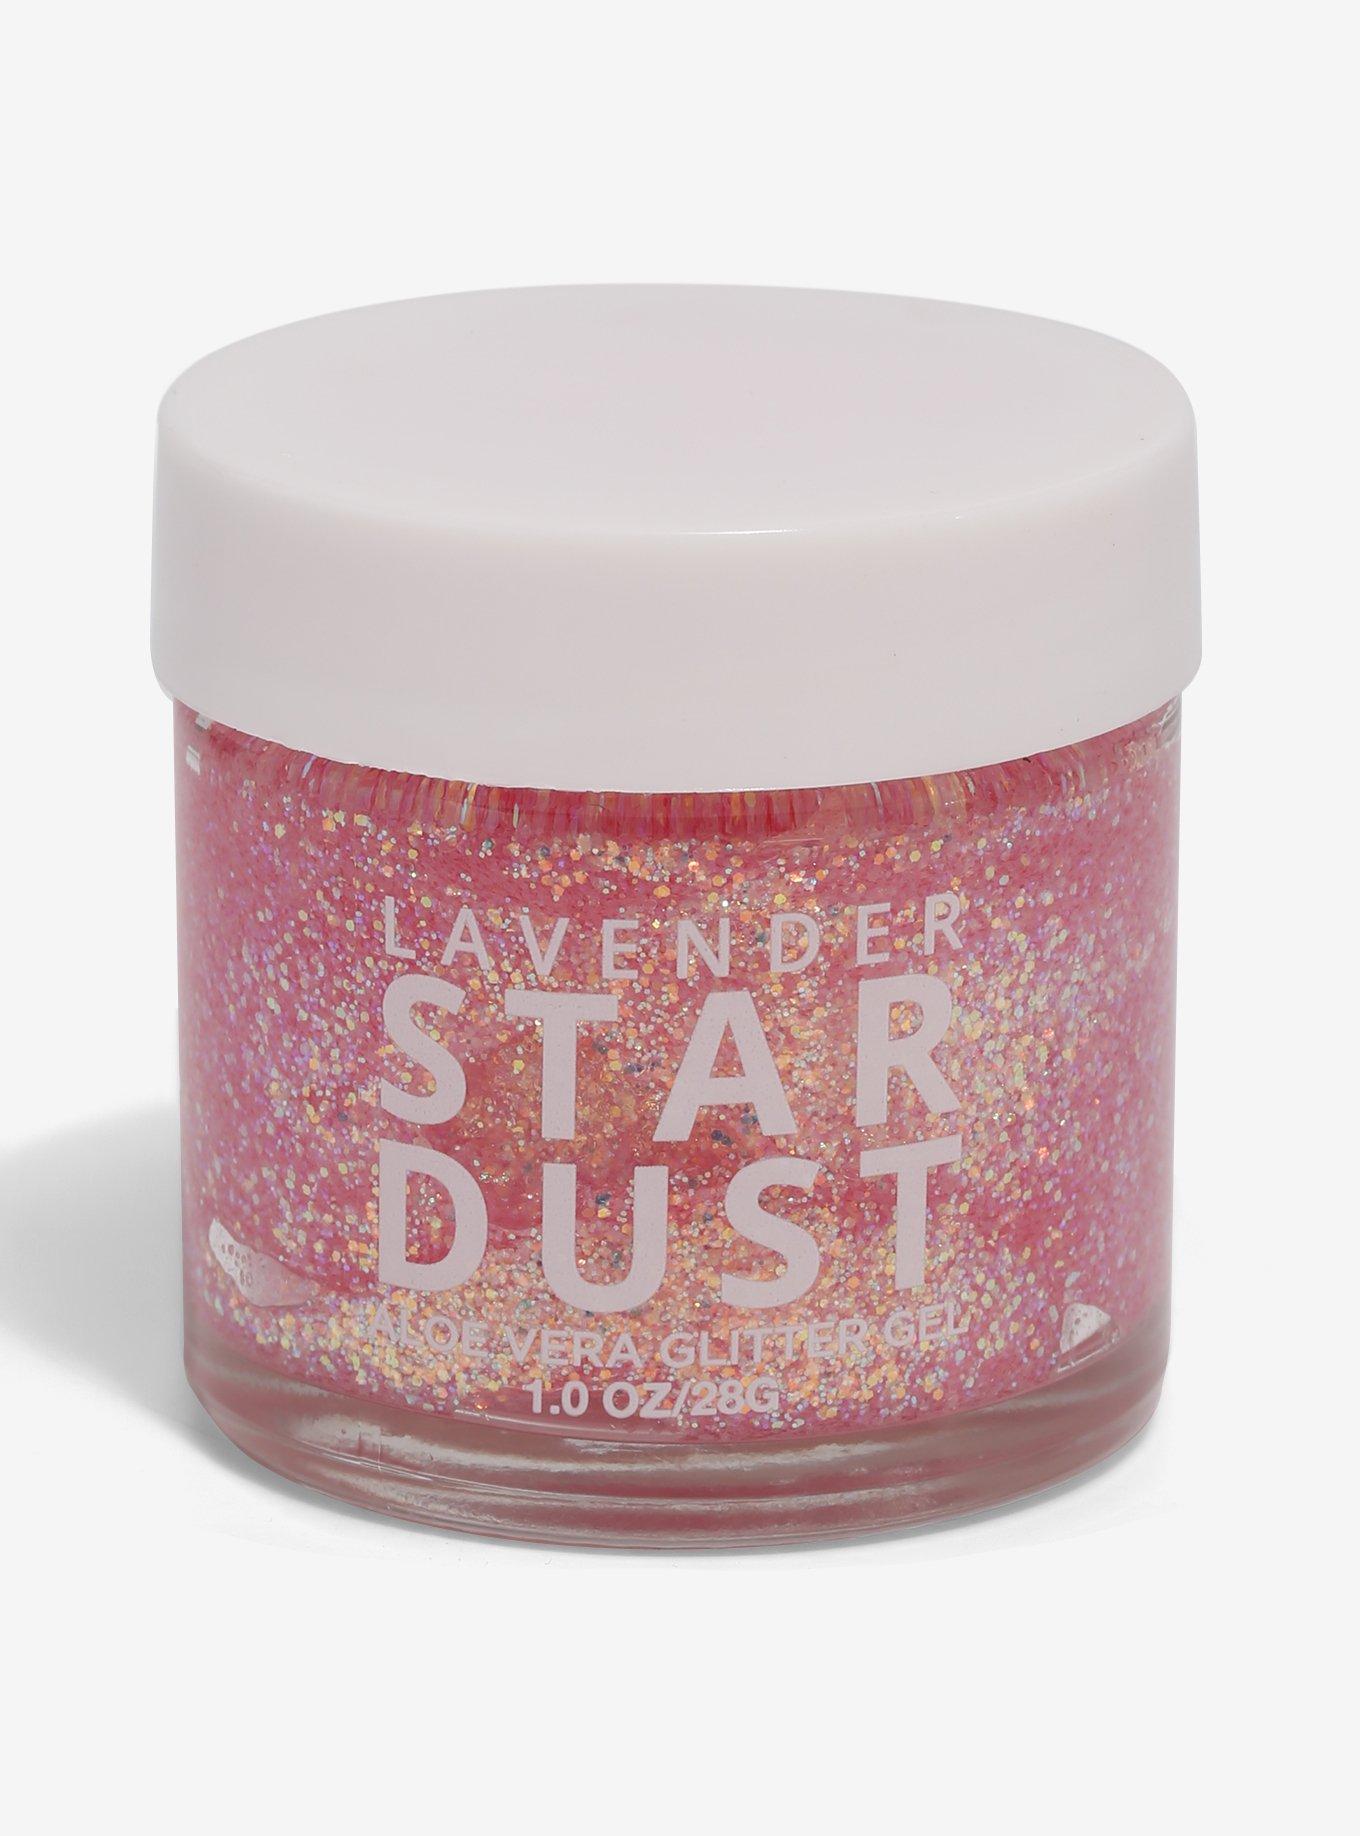 Lavender Stardust Bella Glitter Gel, , hi-res